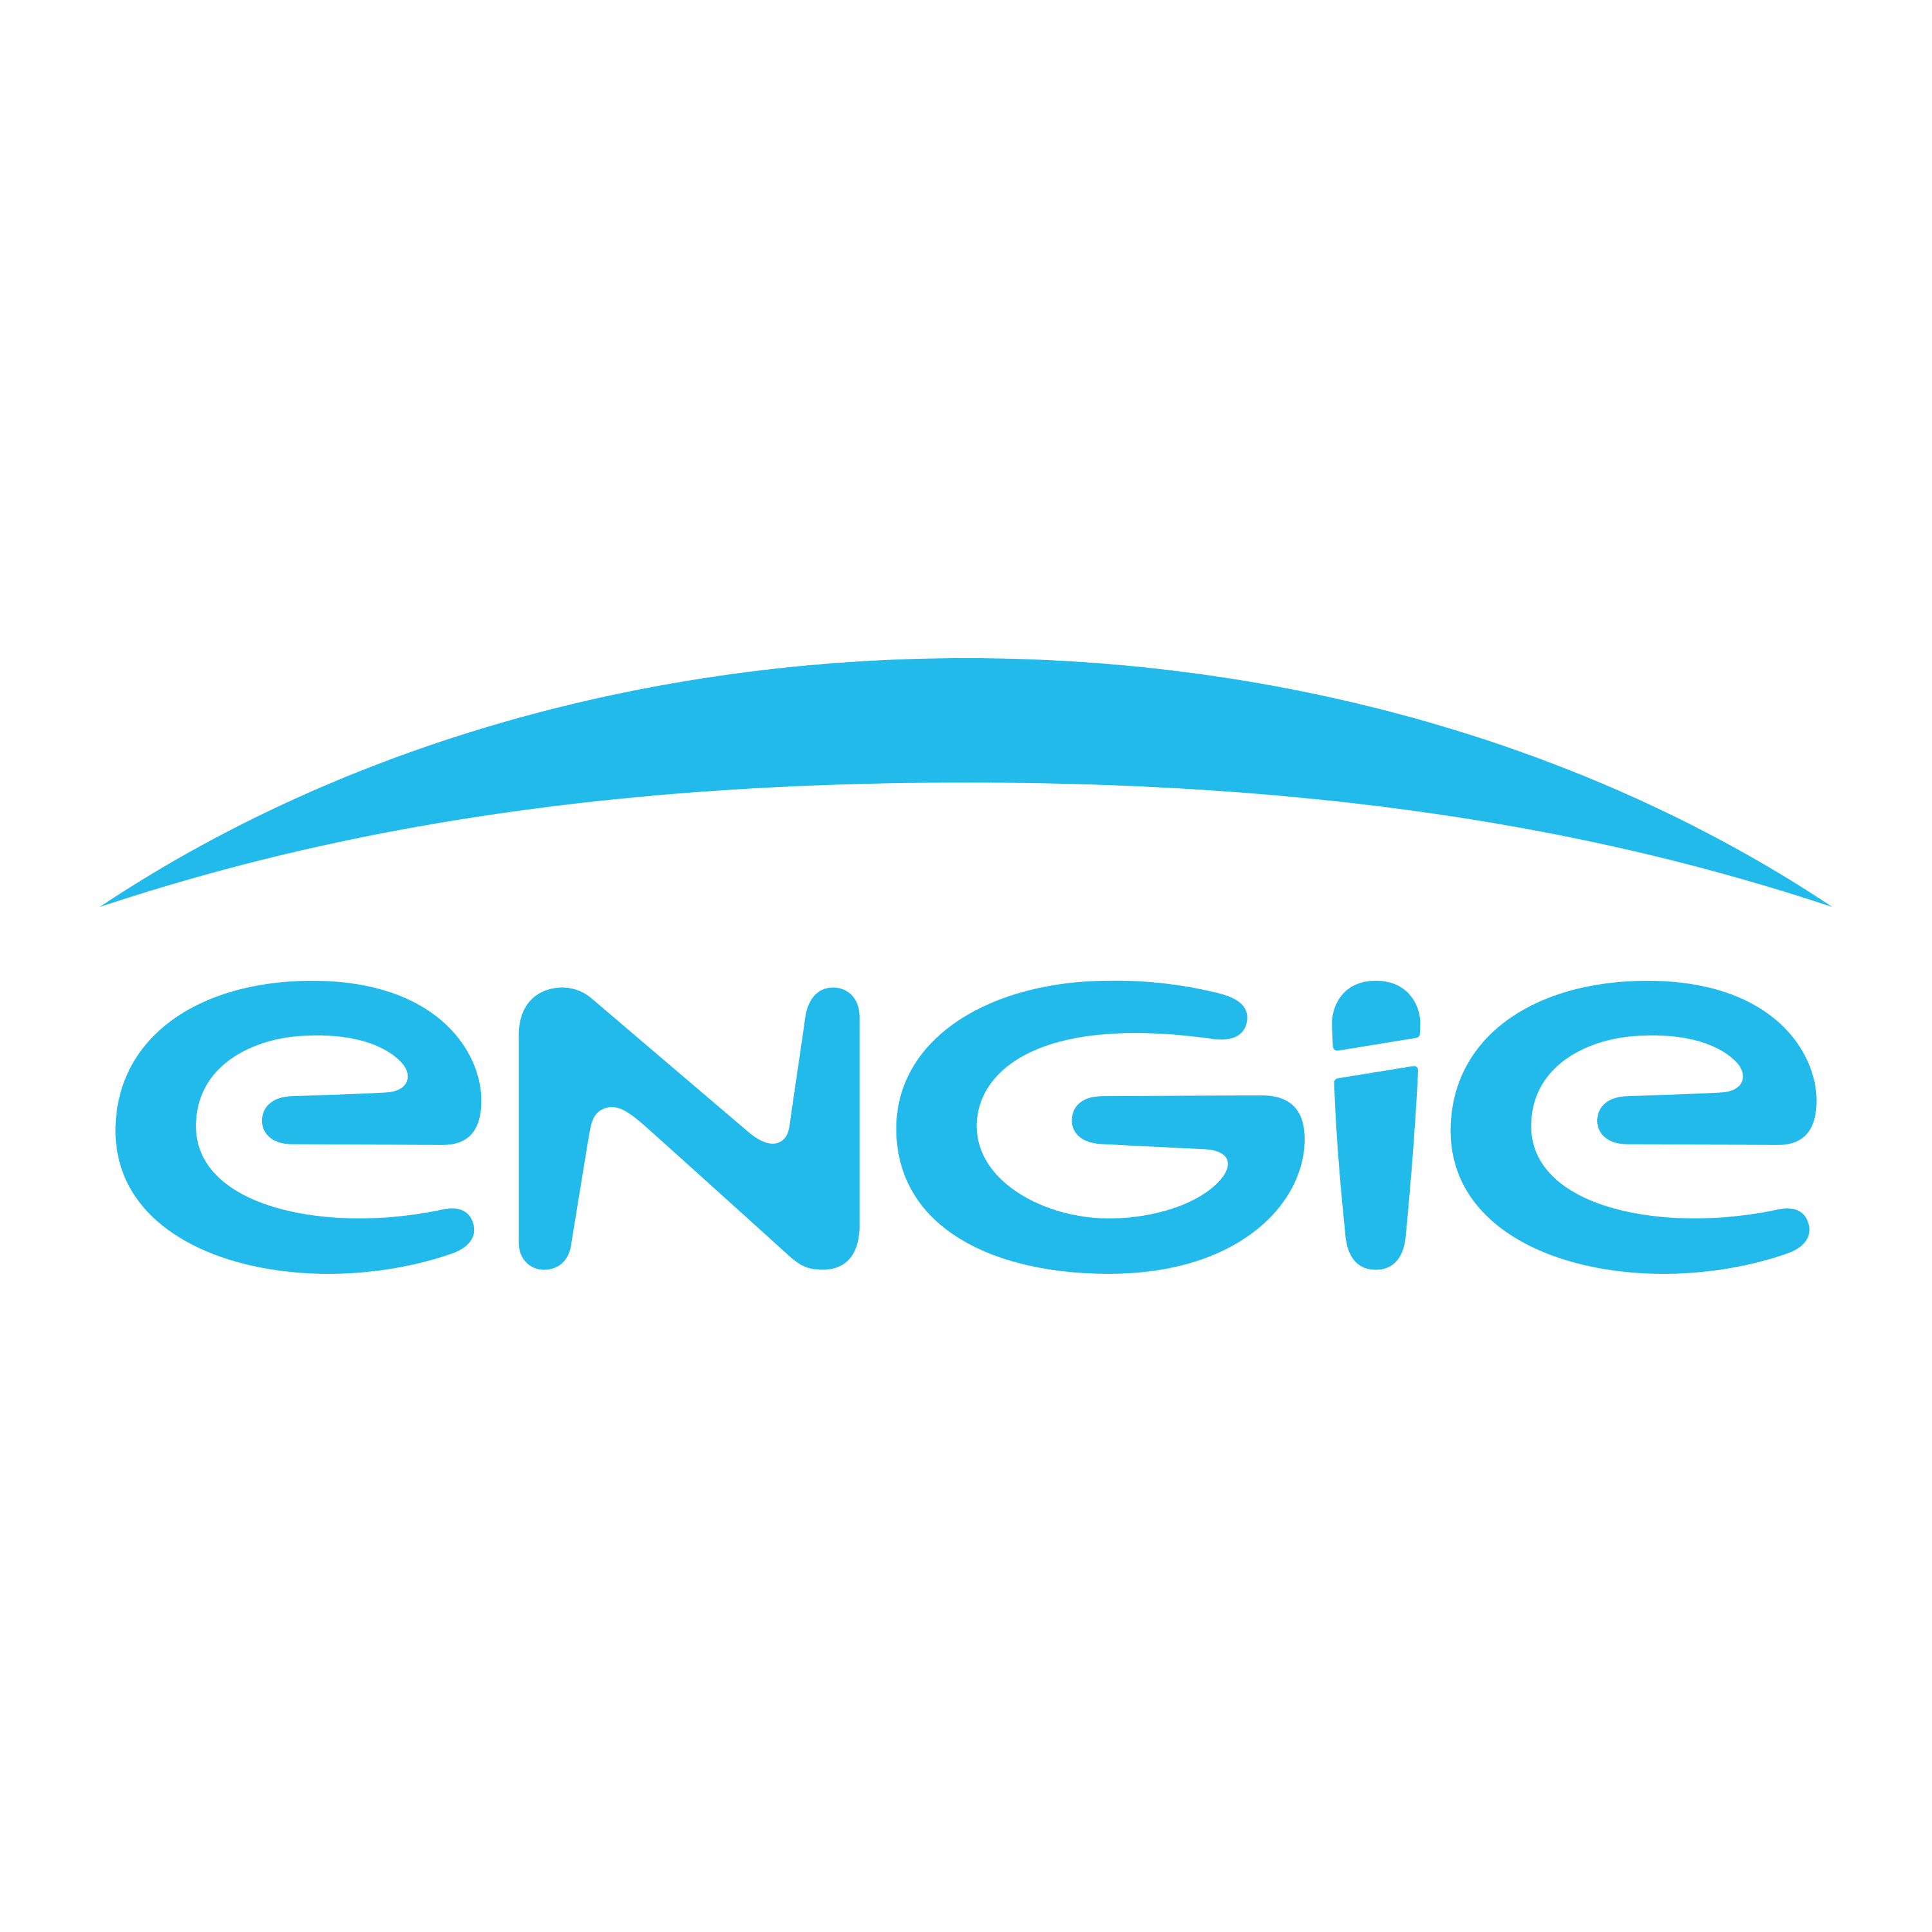 Engie - LOGO-1